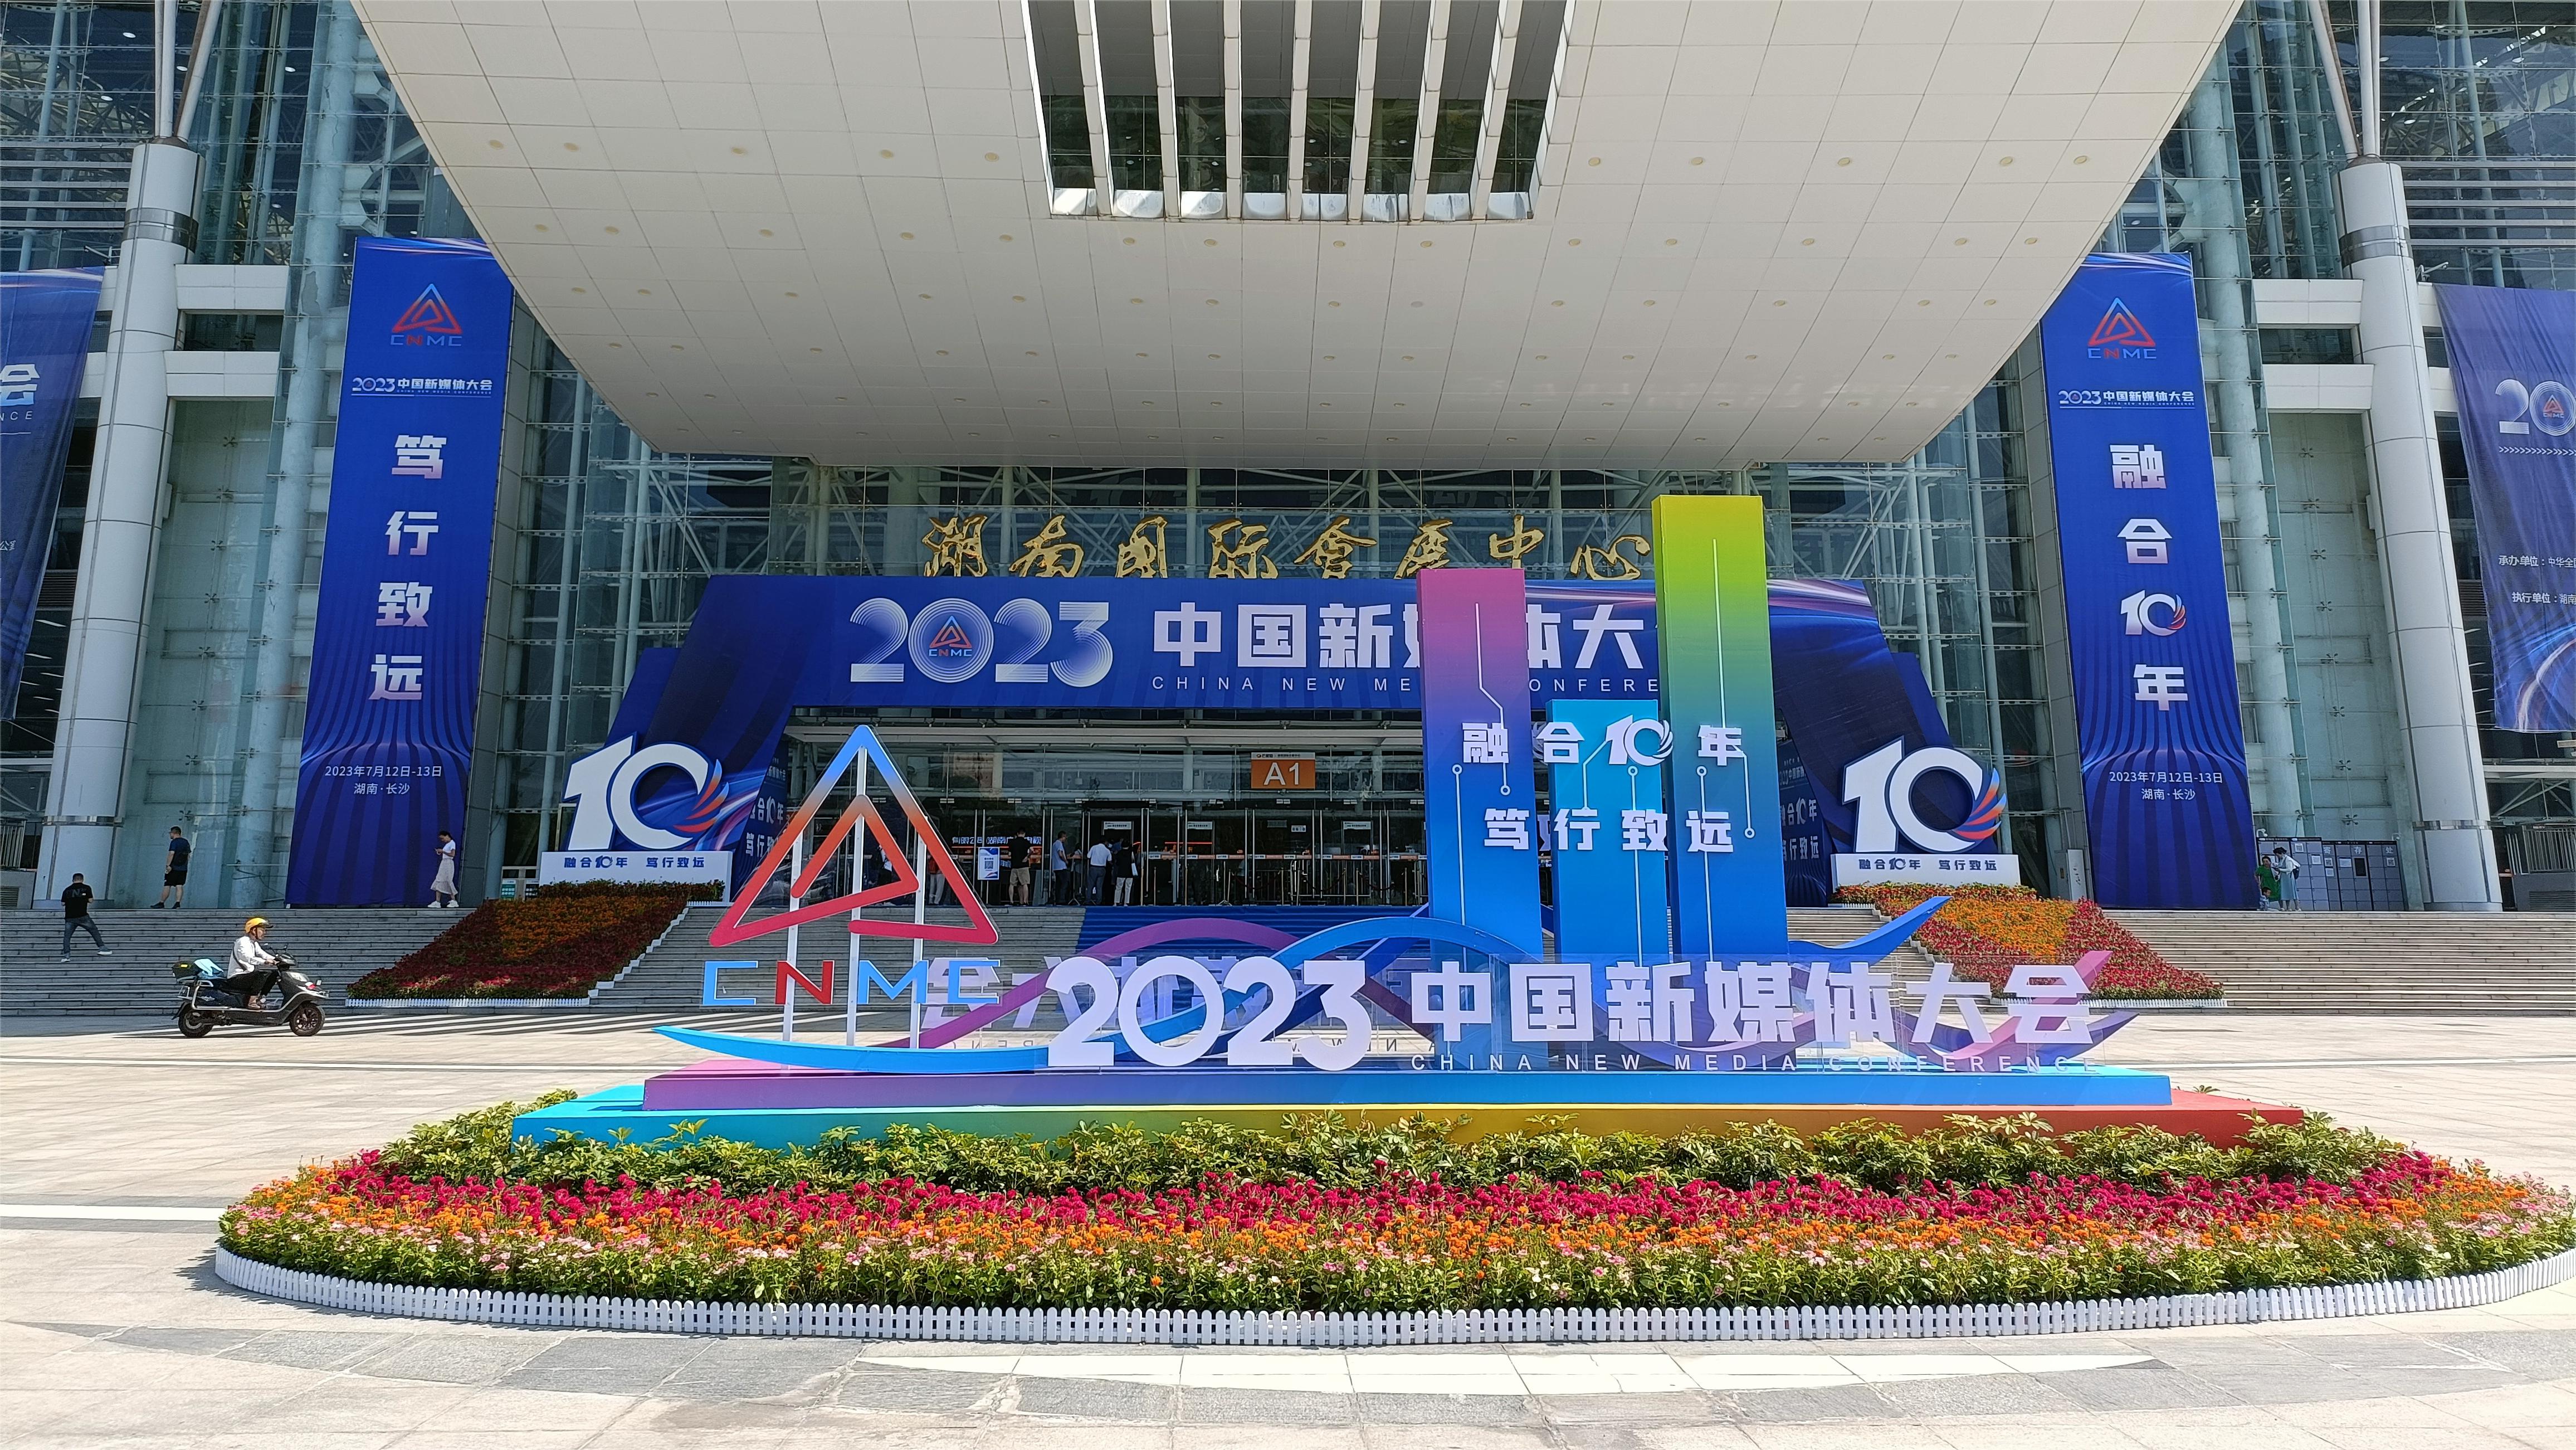 2023中国新媒体大会暨中国新媒体技术展——融合十年 笃行致远